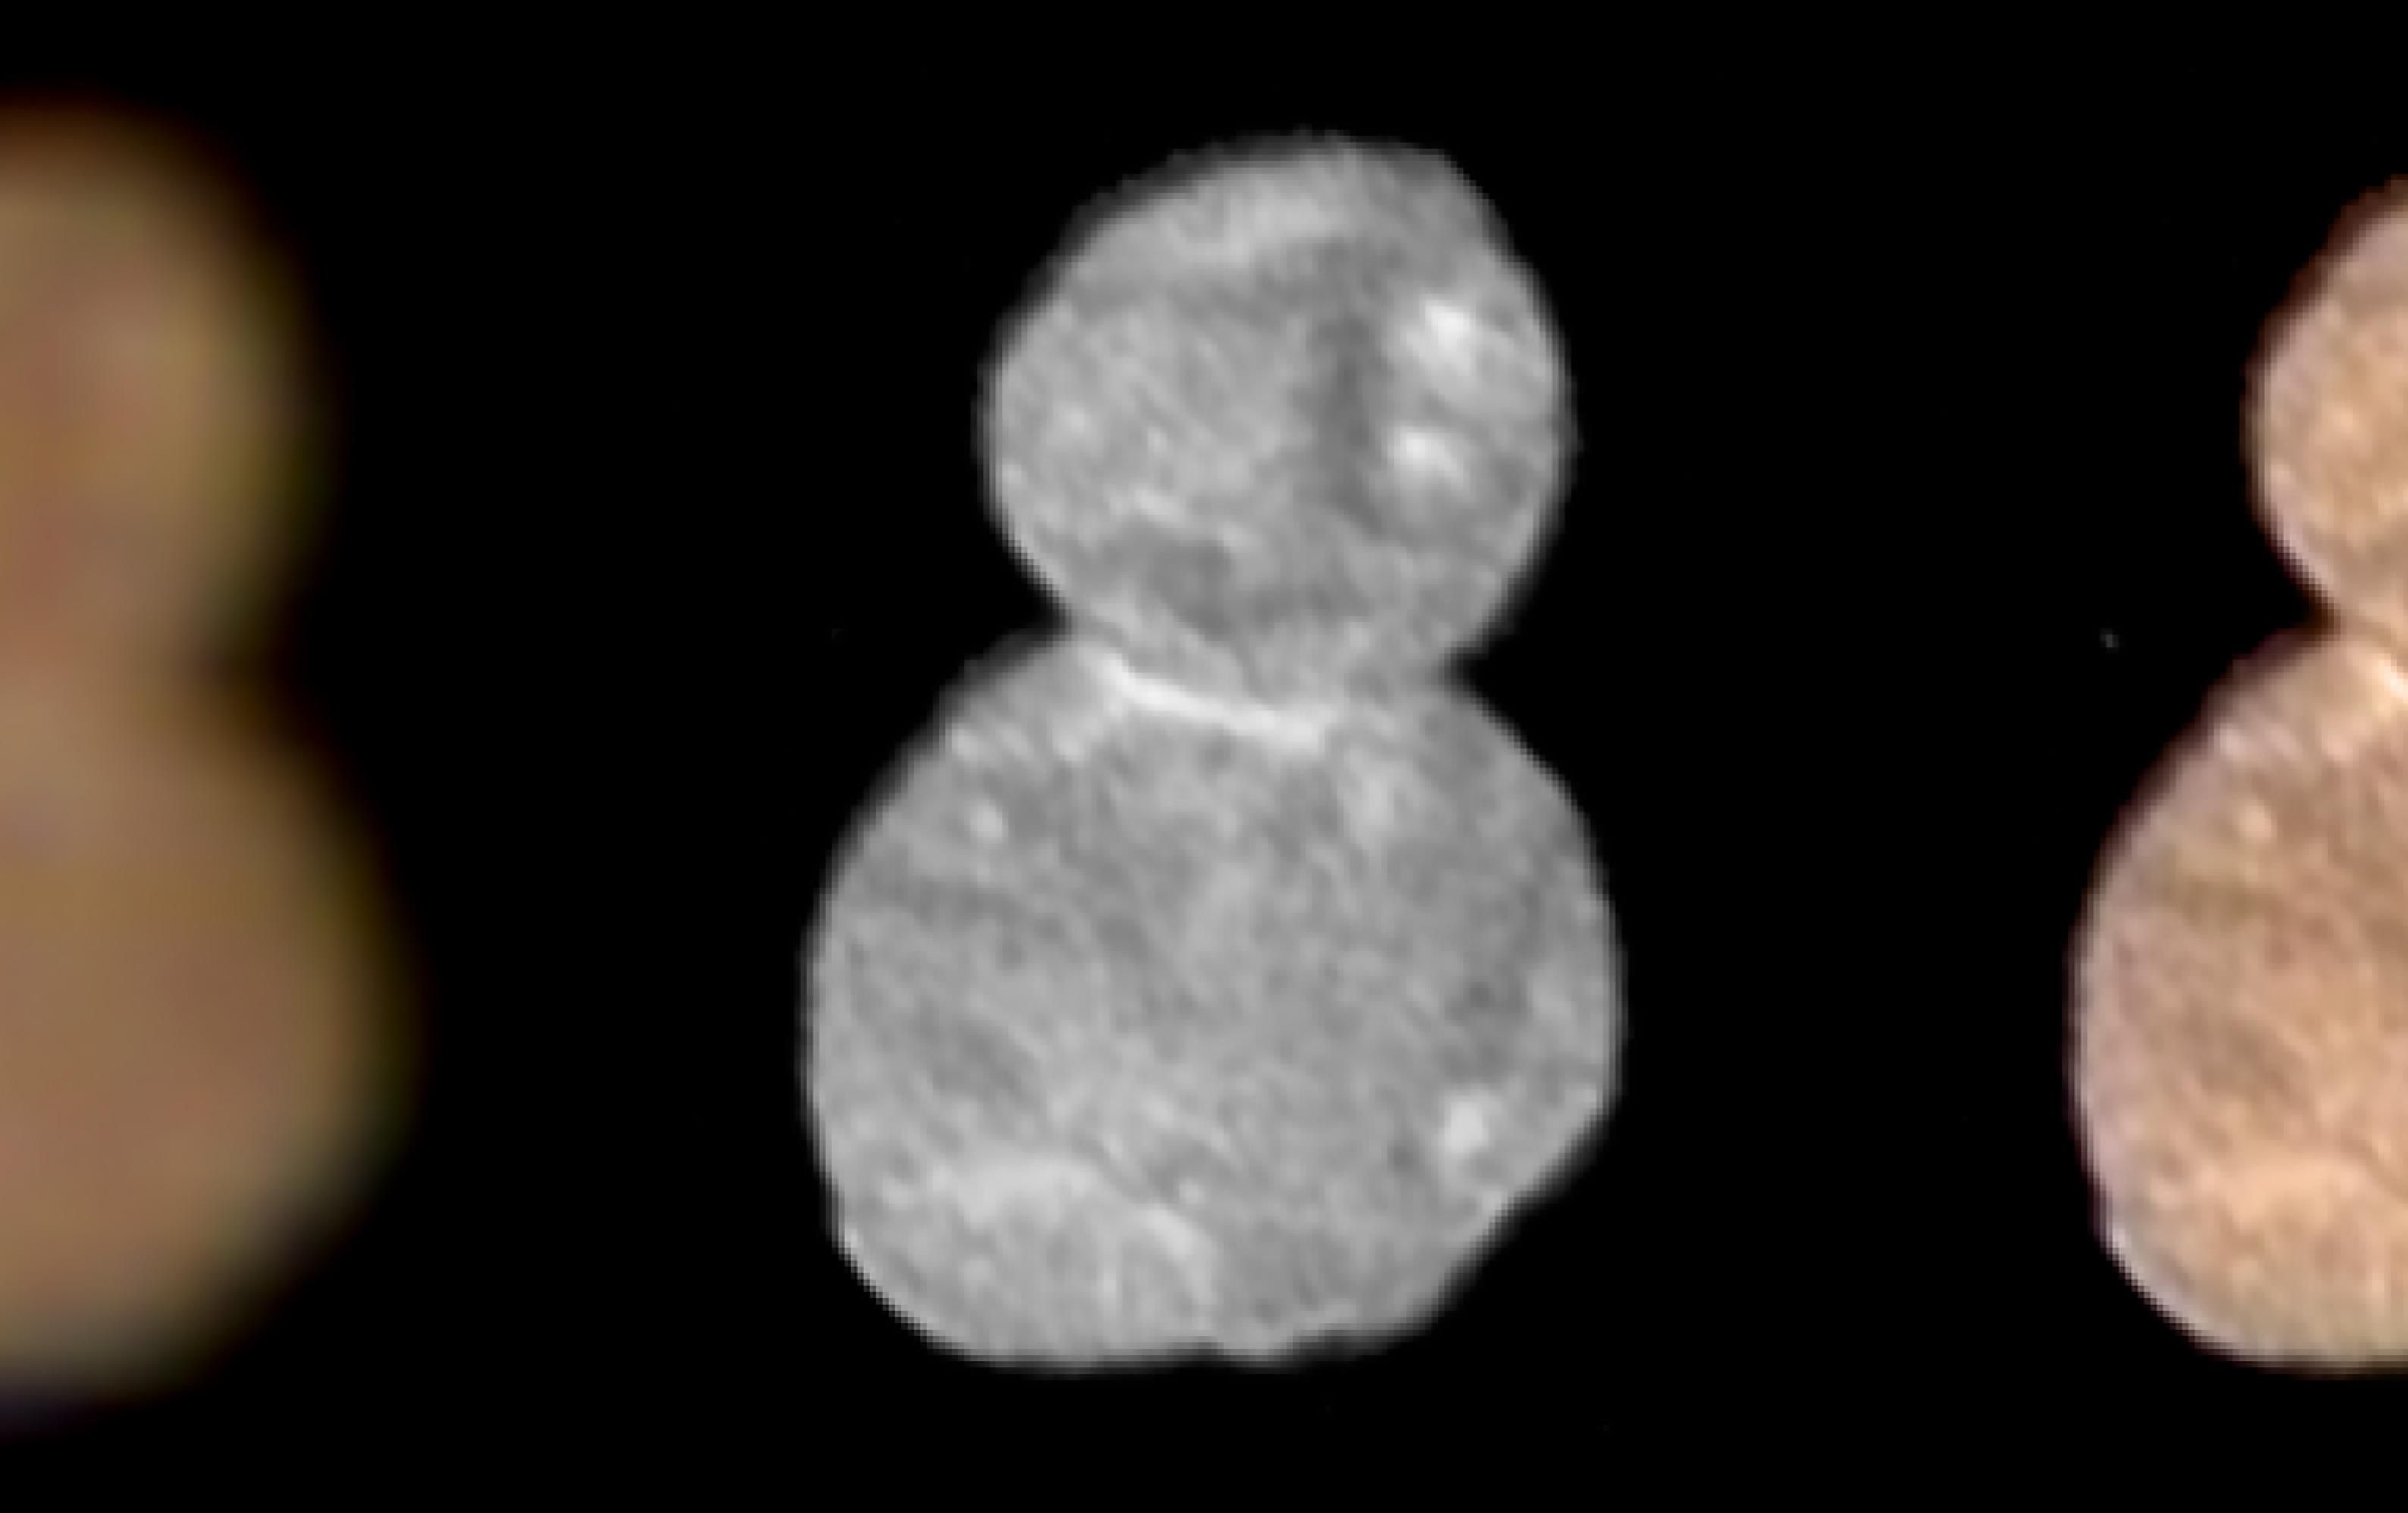 El cuerpo celeste Ultima Thule tiene dos esferas y parece un "muñeco de nieve"